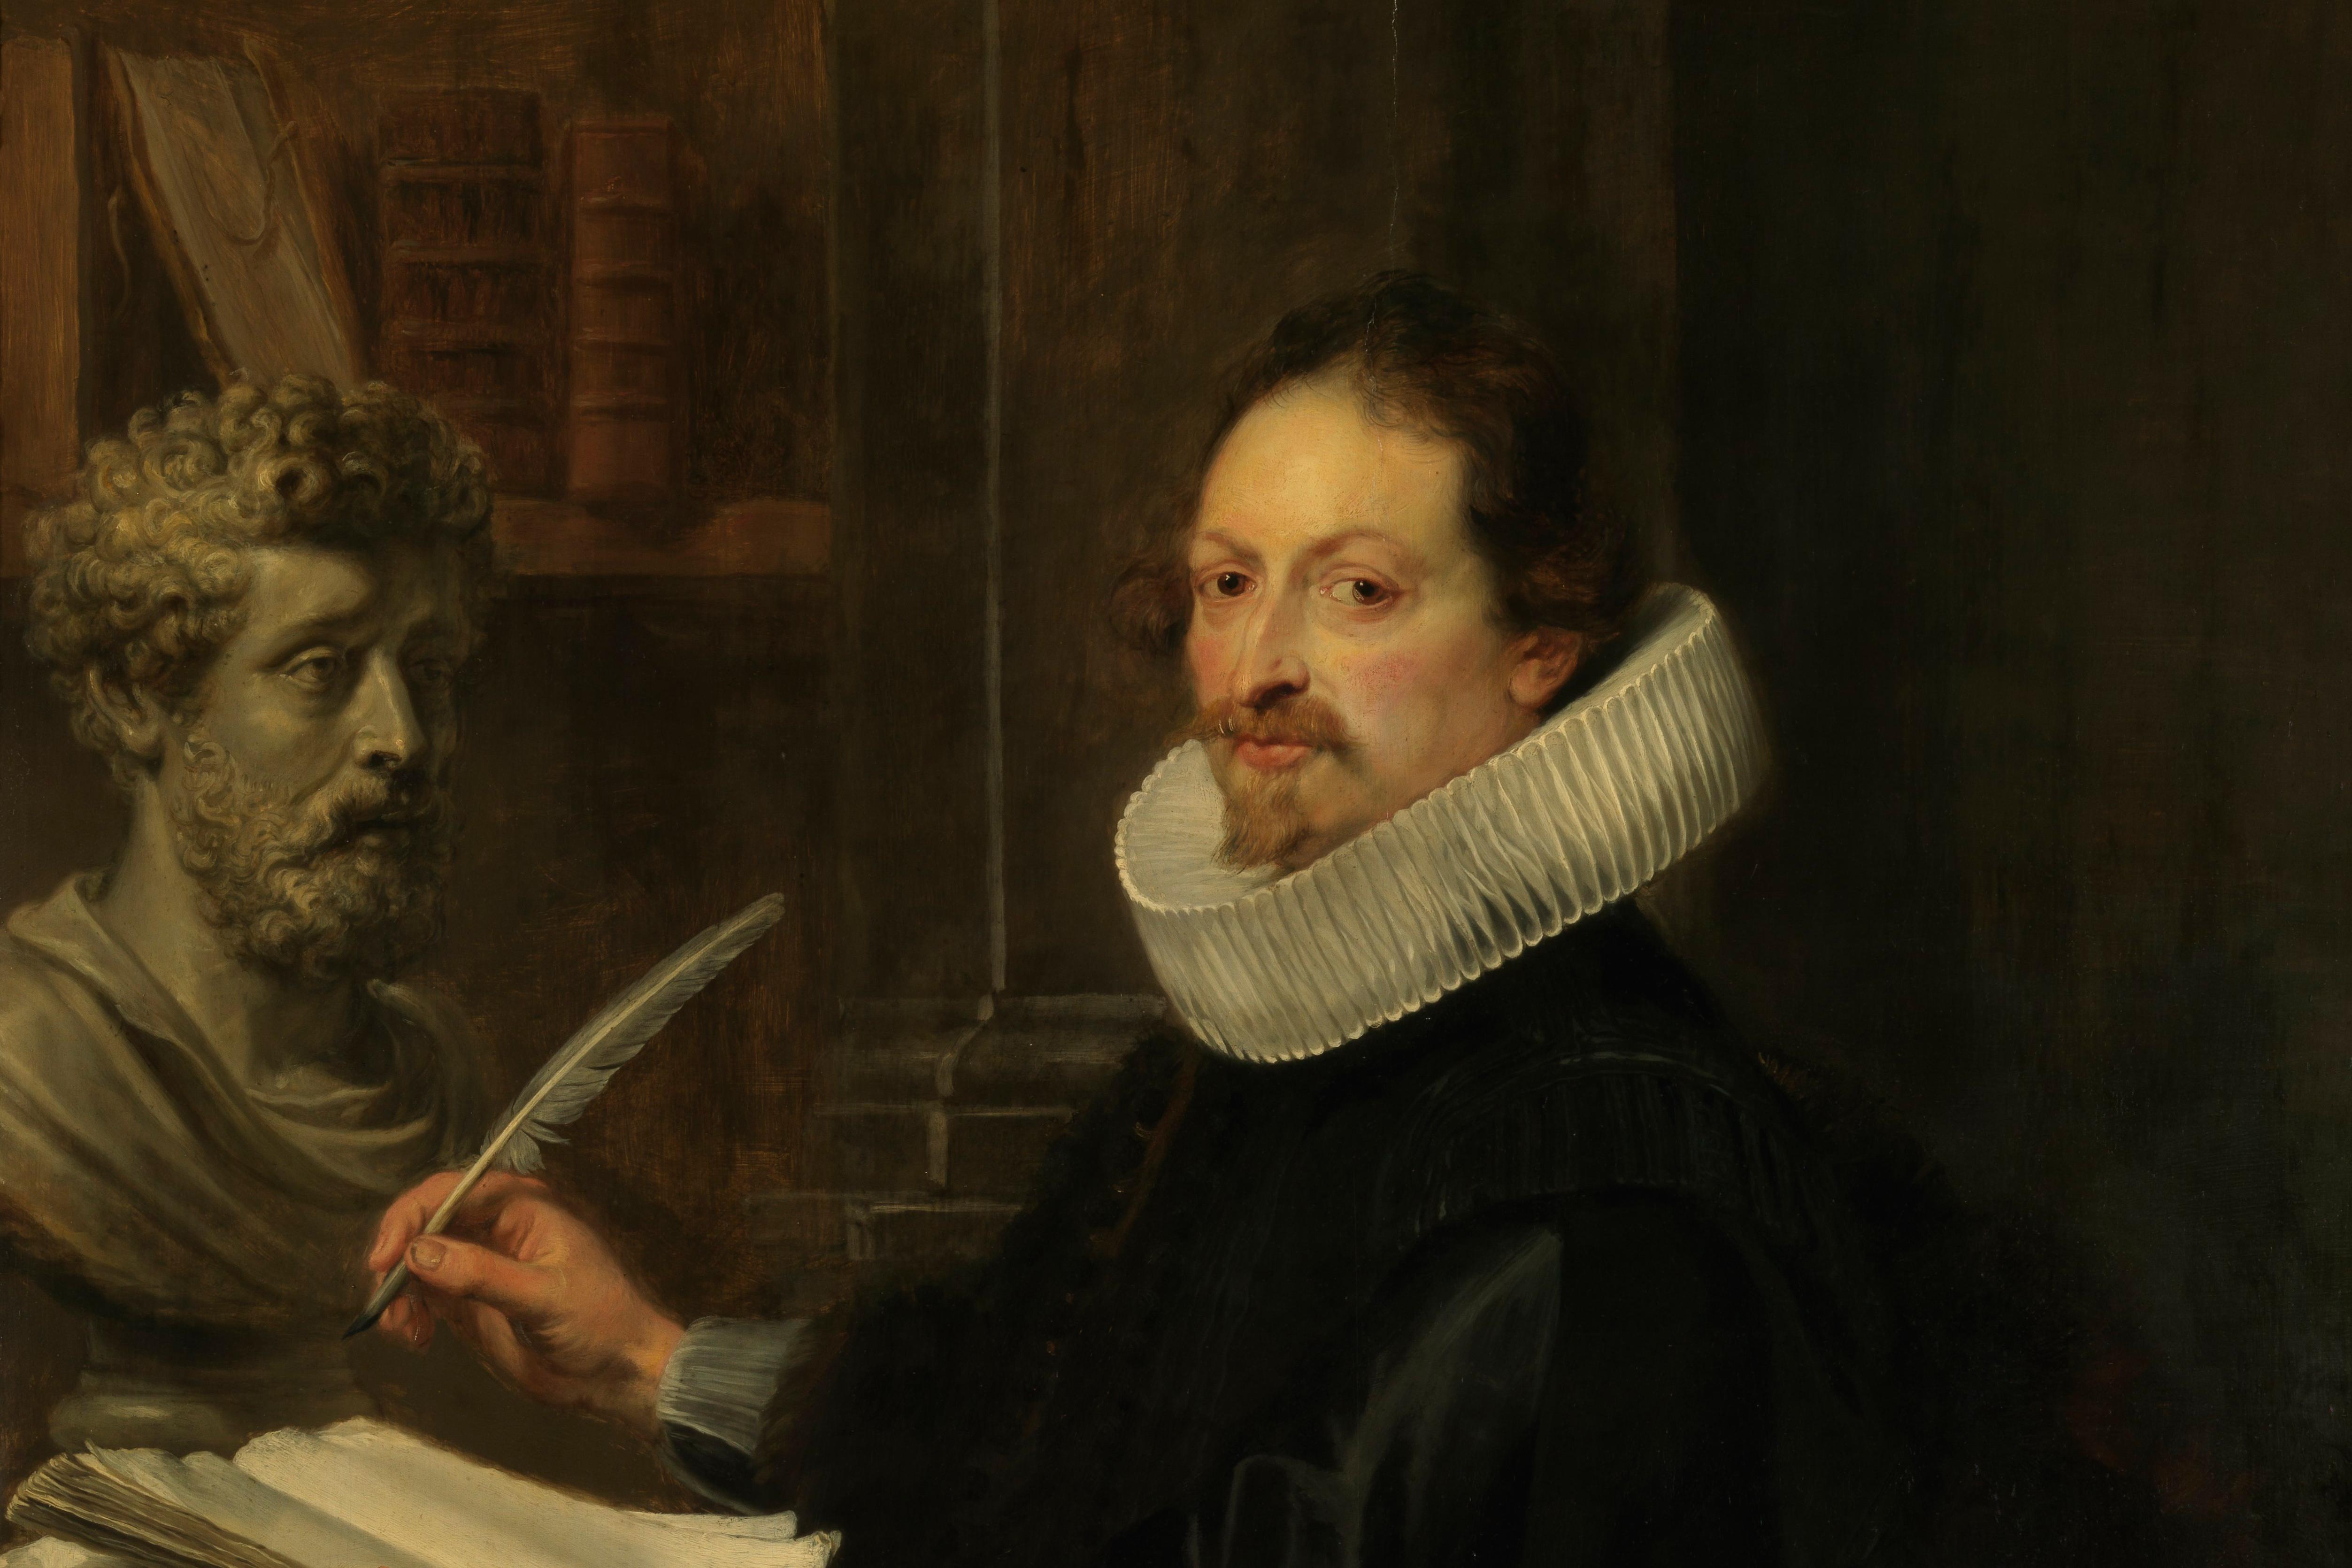 Peter Paul Rubens, Gaspard Gevartius, Royal Museum of Fine Arts, Antwerp.